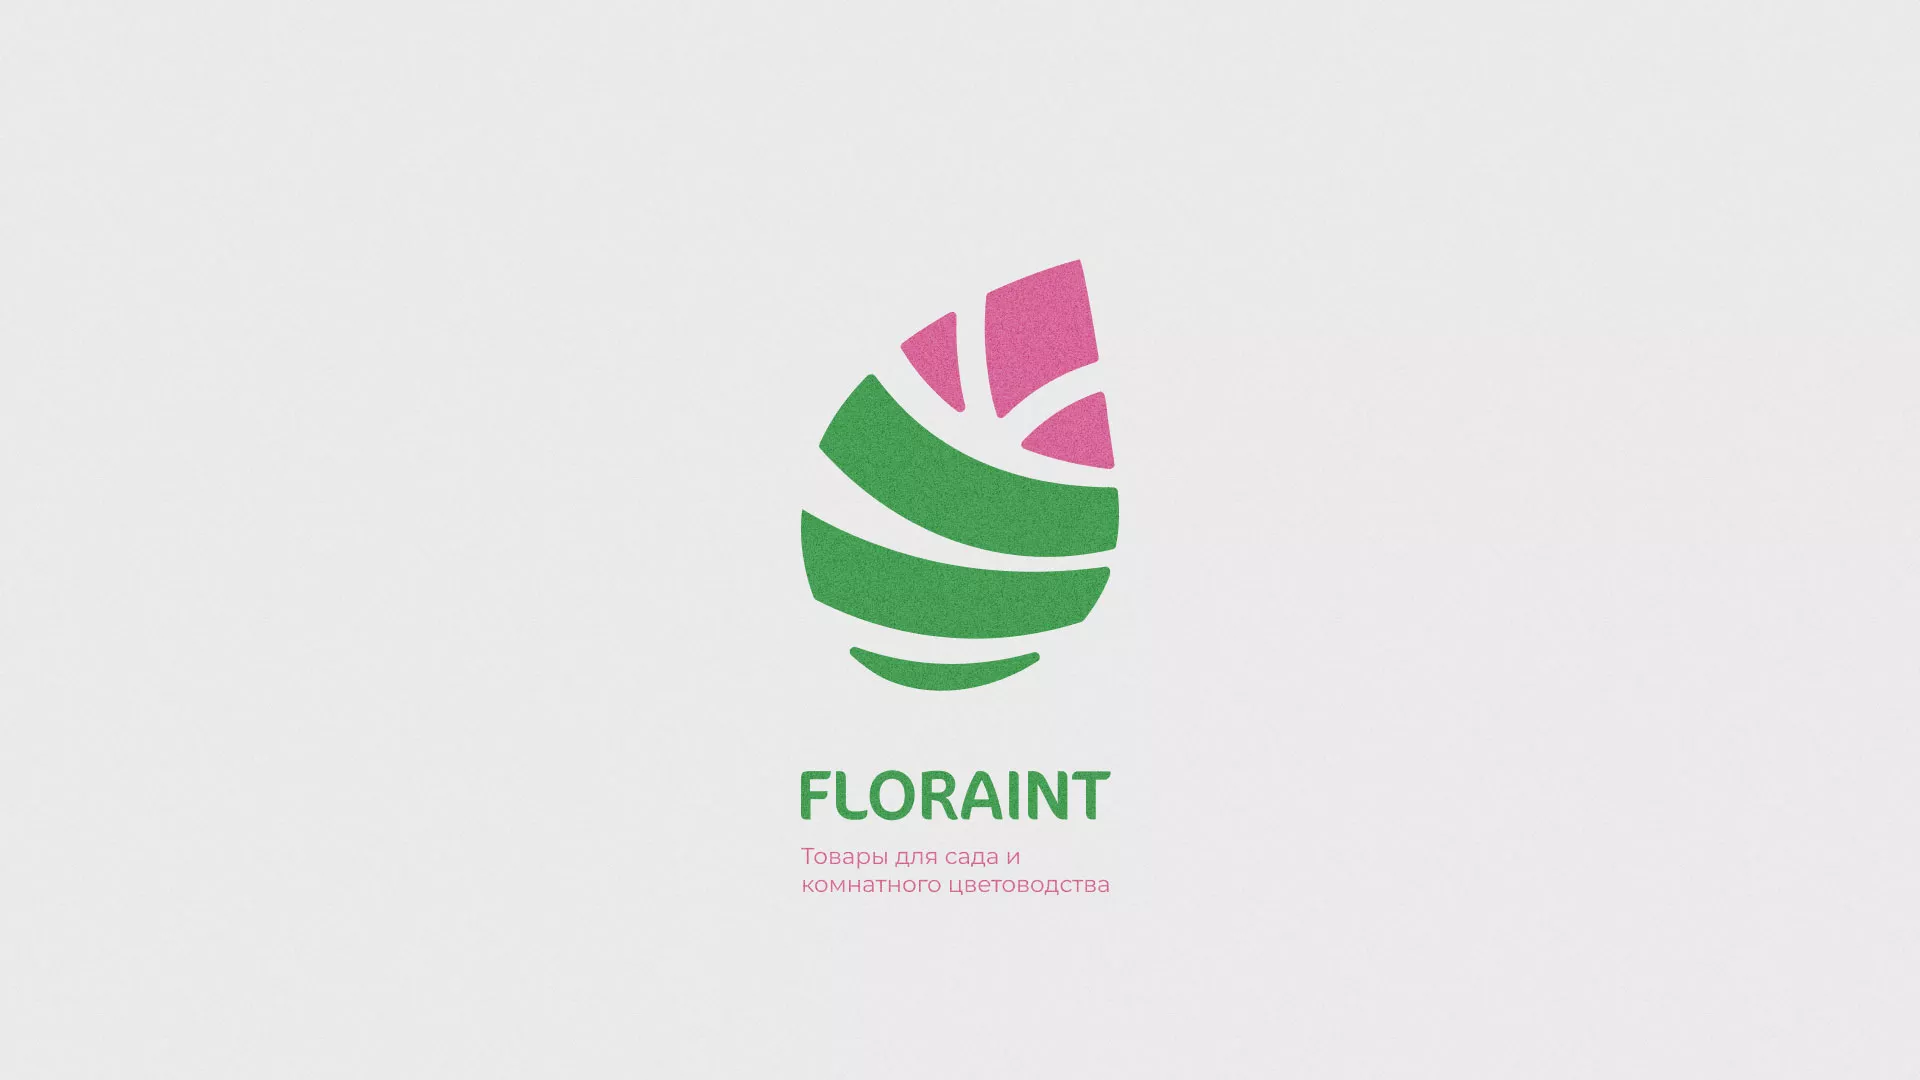 Разработка оформления профиля Instagram для магазина «Floraint» в Усть-Катаве